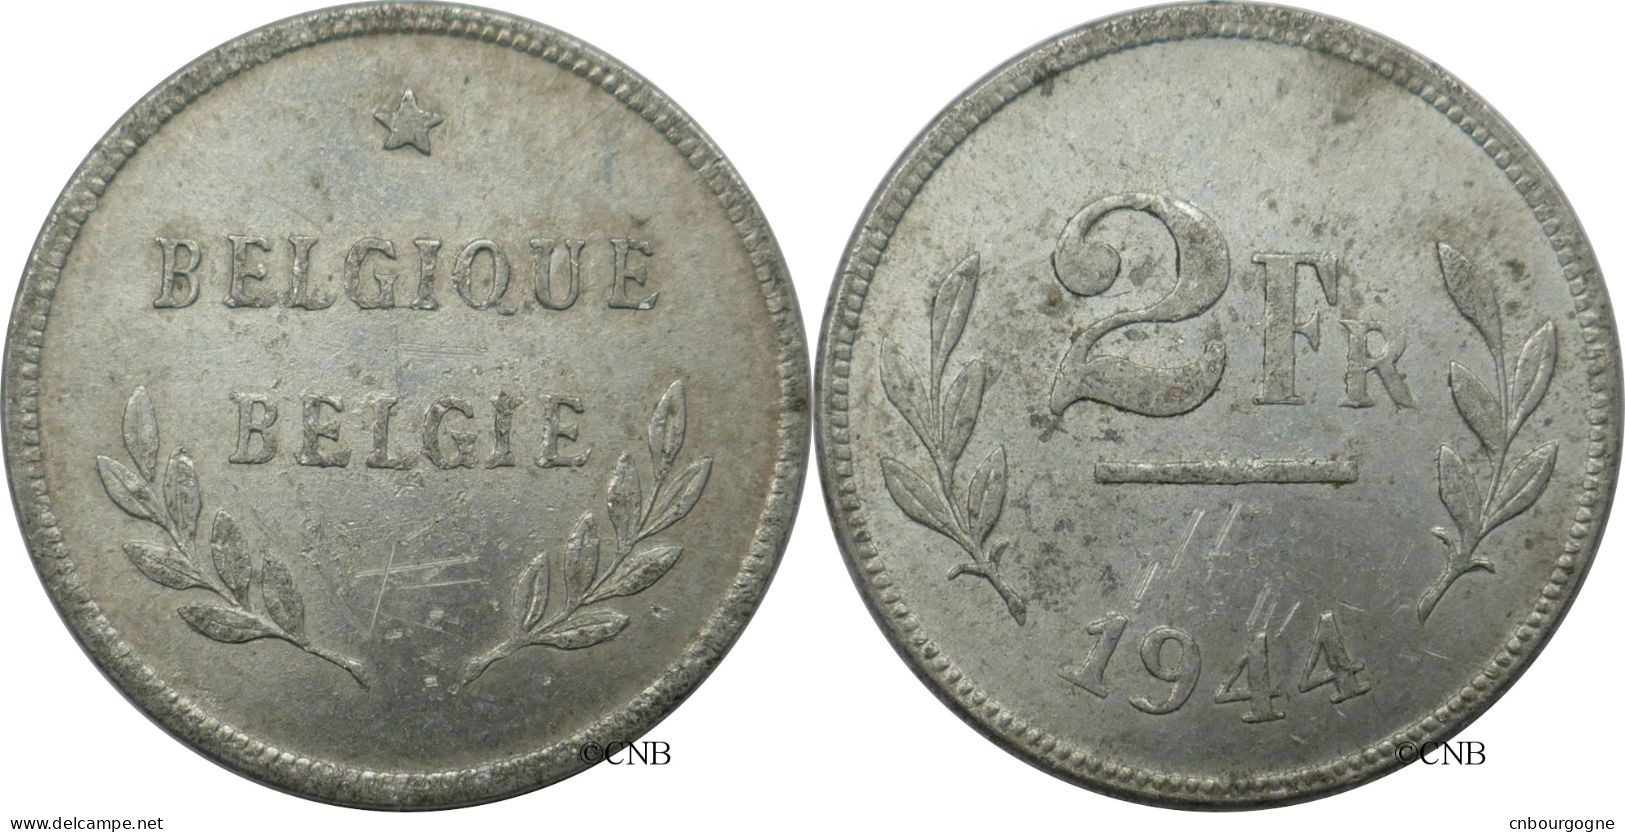 Belgique - Libération - 2 Francs 1944 - TTB+/AU50 ! - Mon6495 - 2 Francs (Liberación)